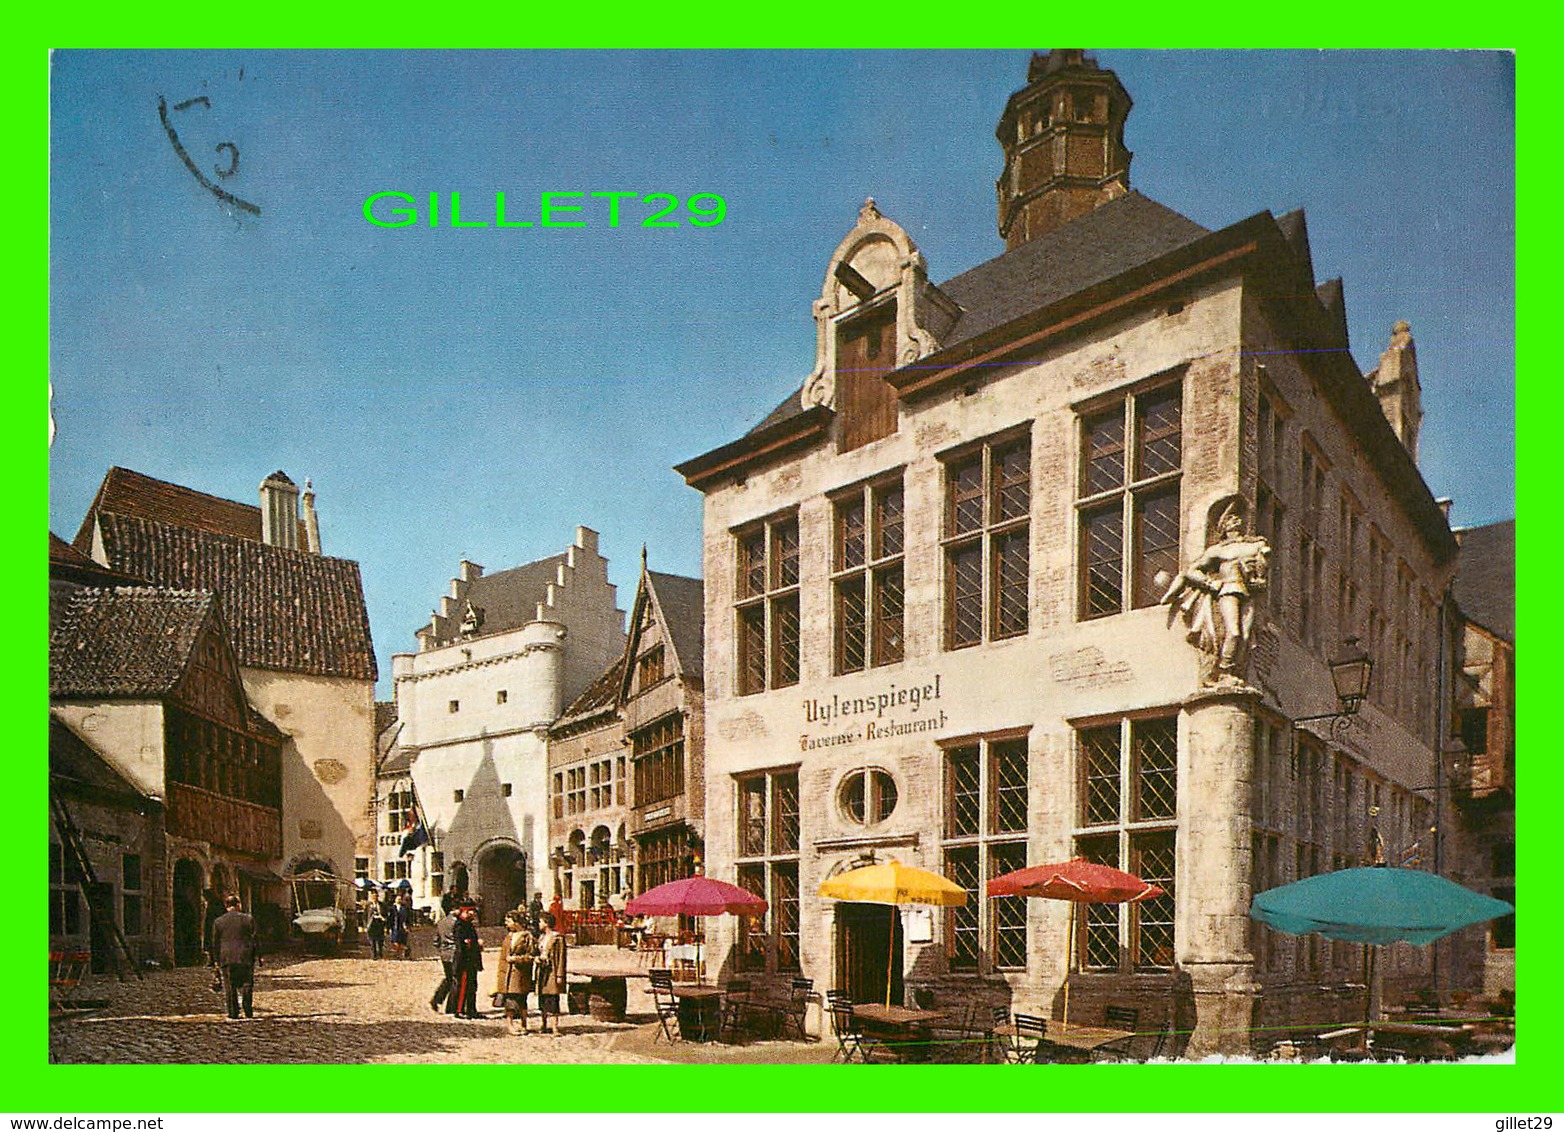 BRUXELLES, BELGIQUE - EXPOSITION UNIVERSELLE DE BRUXELLES 1958 - PLAN MAISON ANVERSOISE DE STYLE RENAISSANCE - CIRCULÉE - Expositions Universelles